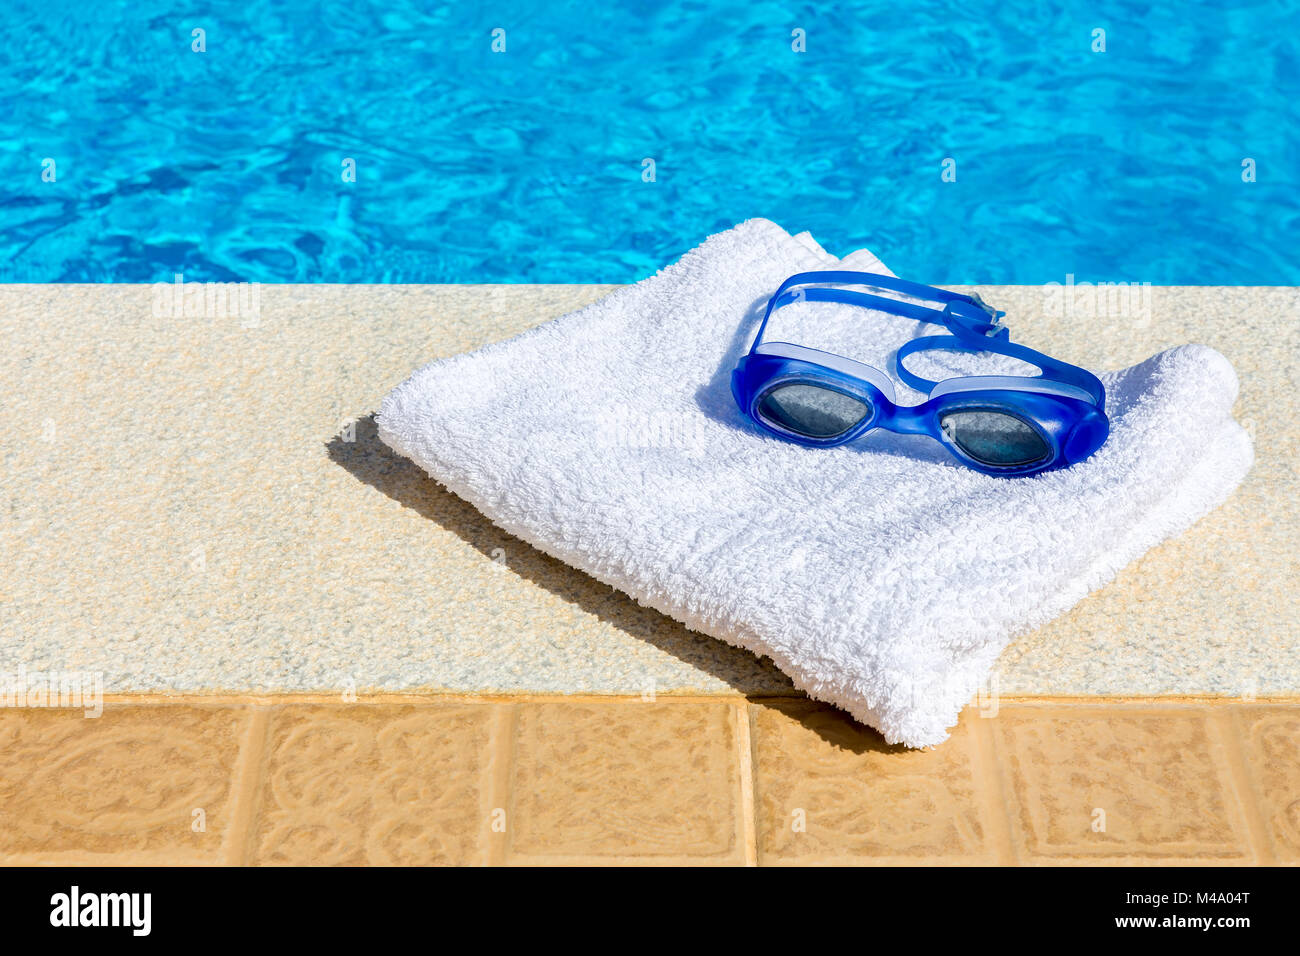 Lunettes de natation et serviette proche piscine Banque D'Images